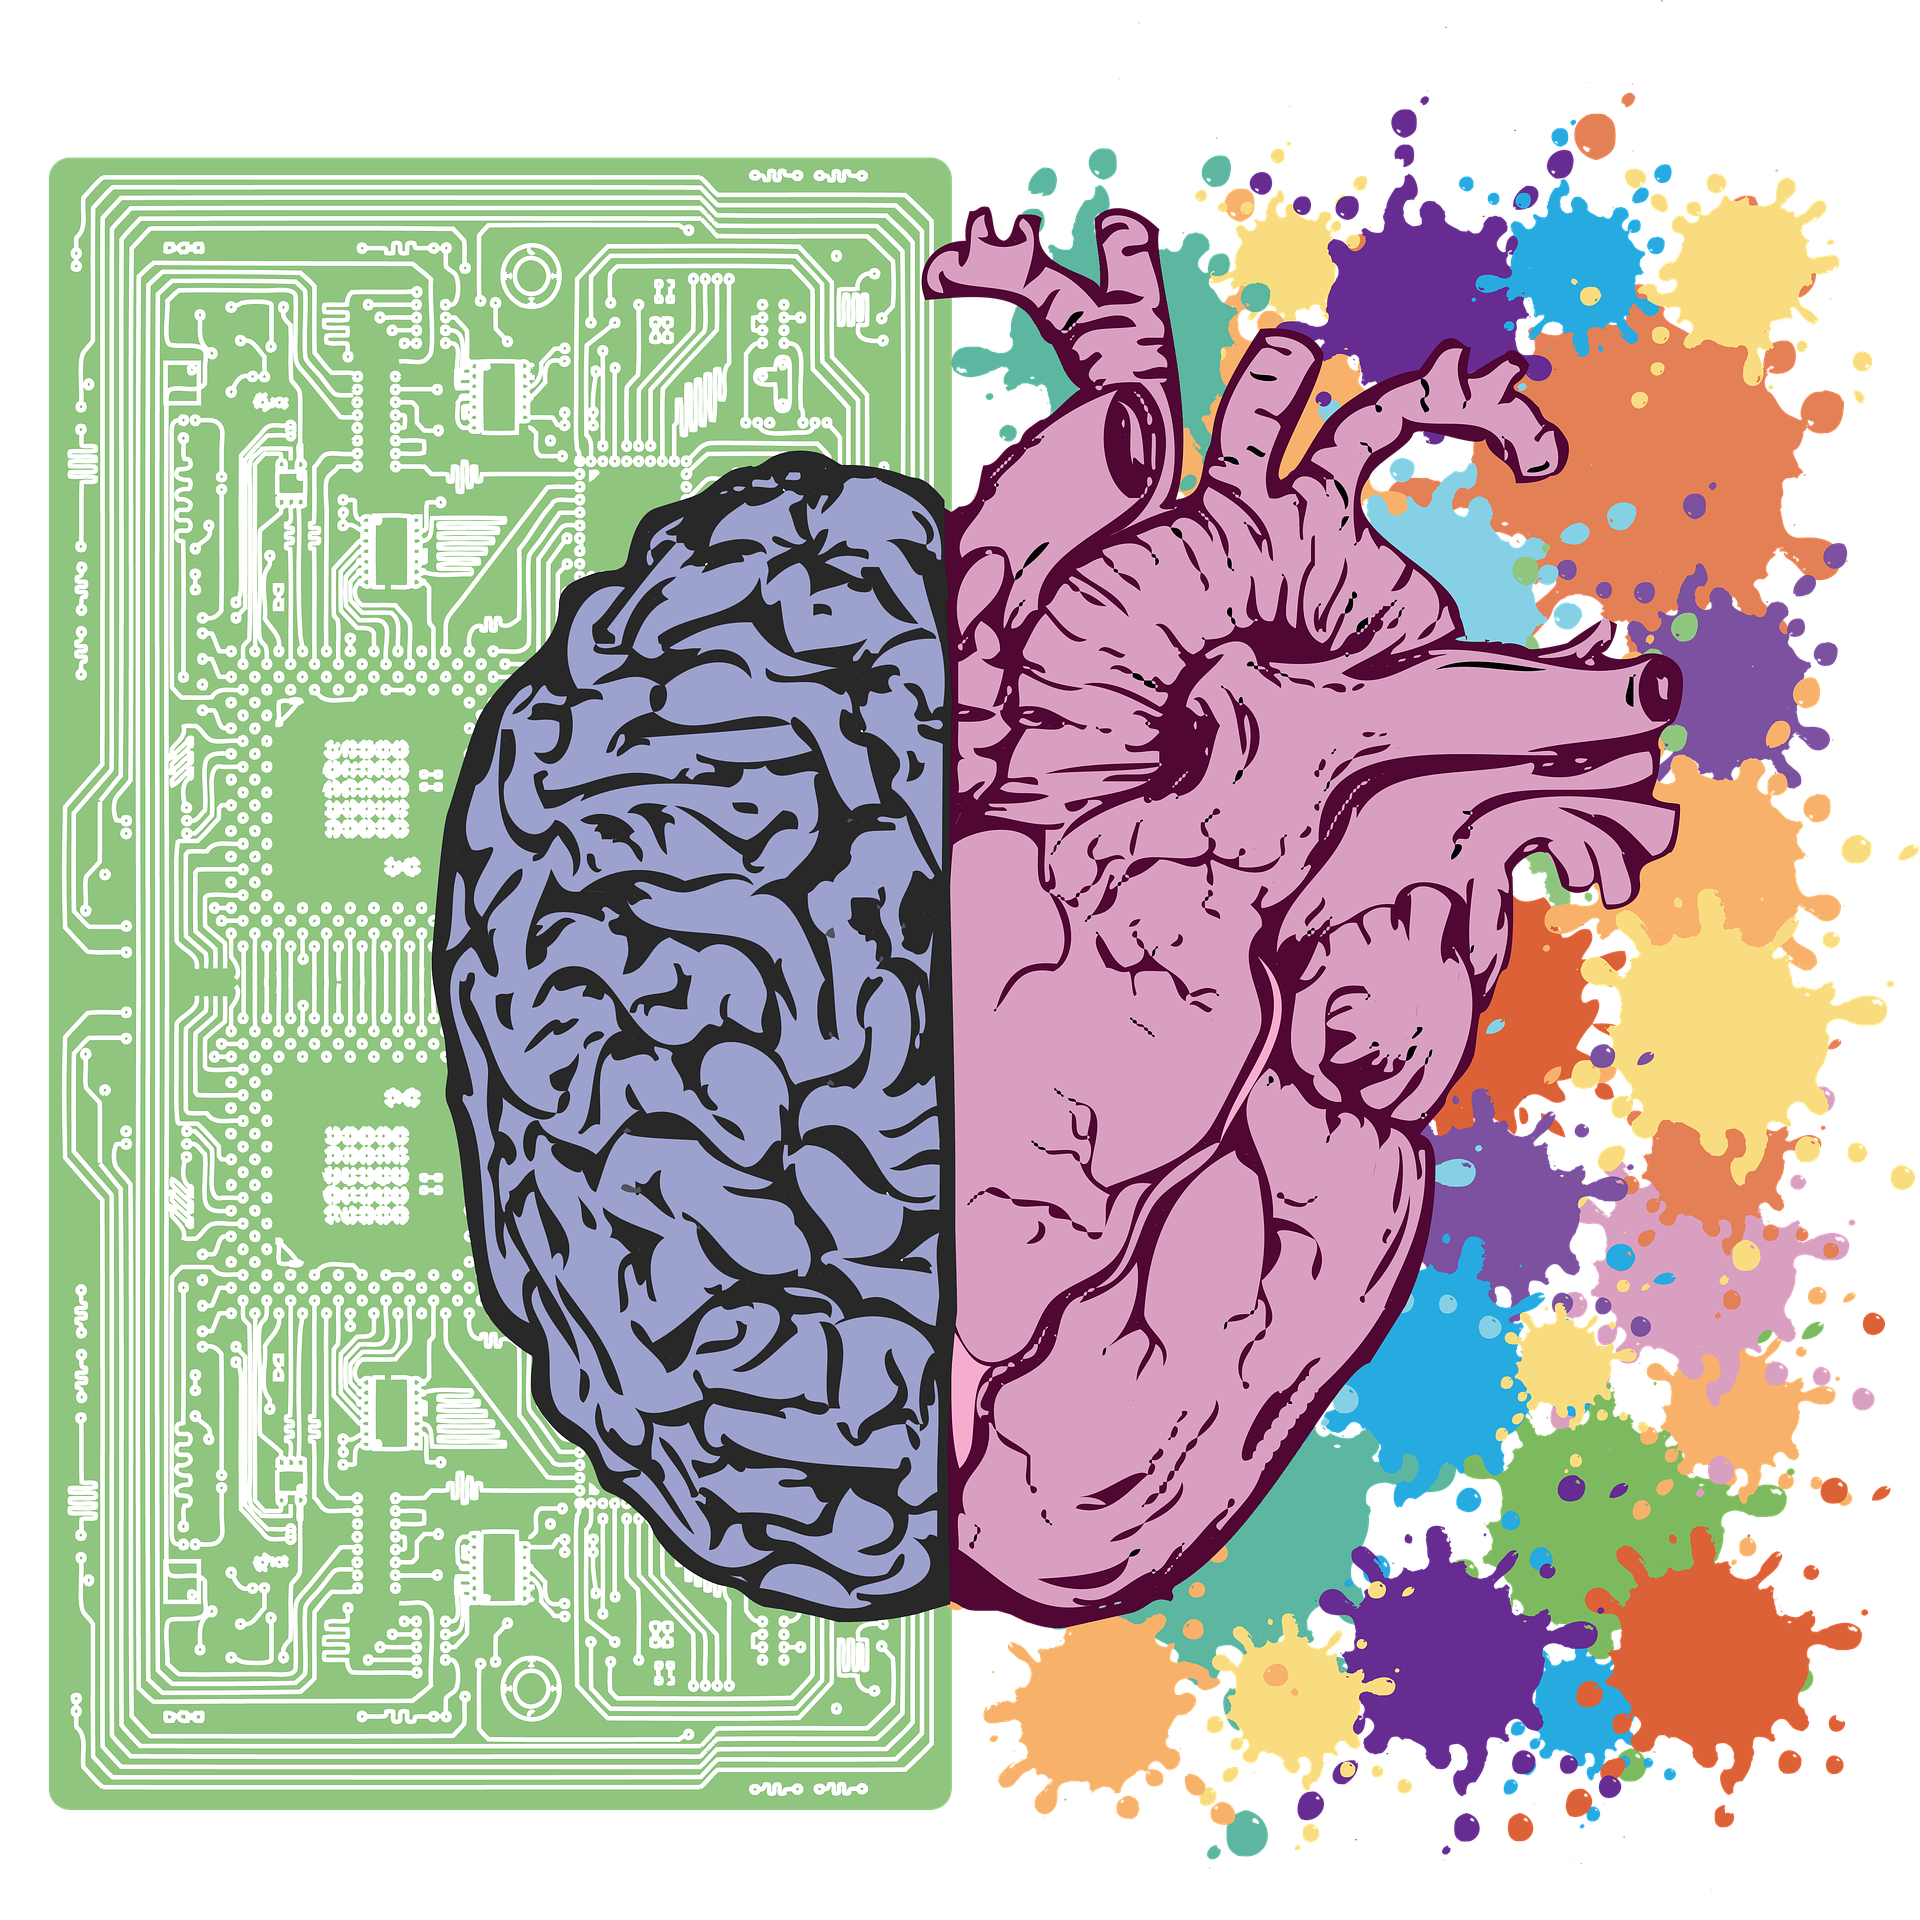 मस्तिष्क के दाएं और बाएं गोलार्द्ध प्रत्येक पक्ष के साथ एक अलग रंग होता है। बाईं ओर एक कंप्यूटर चिप की पृष्ठभूमि के खिलाफ और दाईं ओर अलग-अलग चमकीले रंगों के छींटों की पृष्ठभूमि के खिलाफ खींचा गया है।